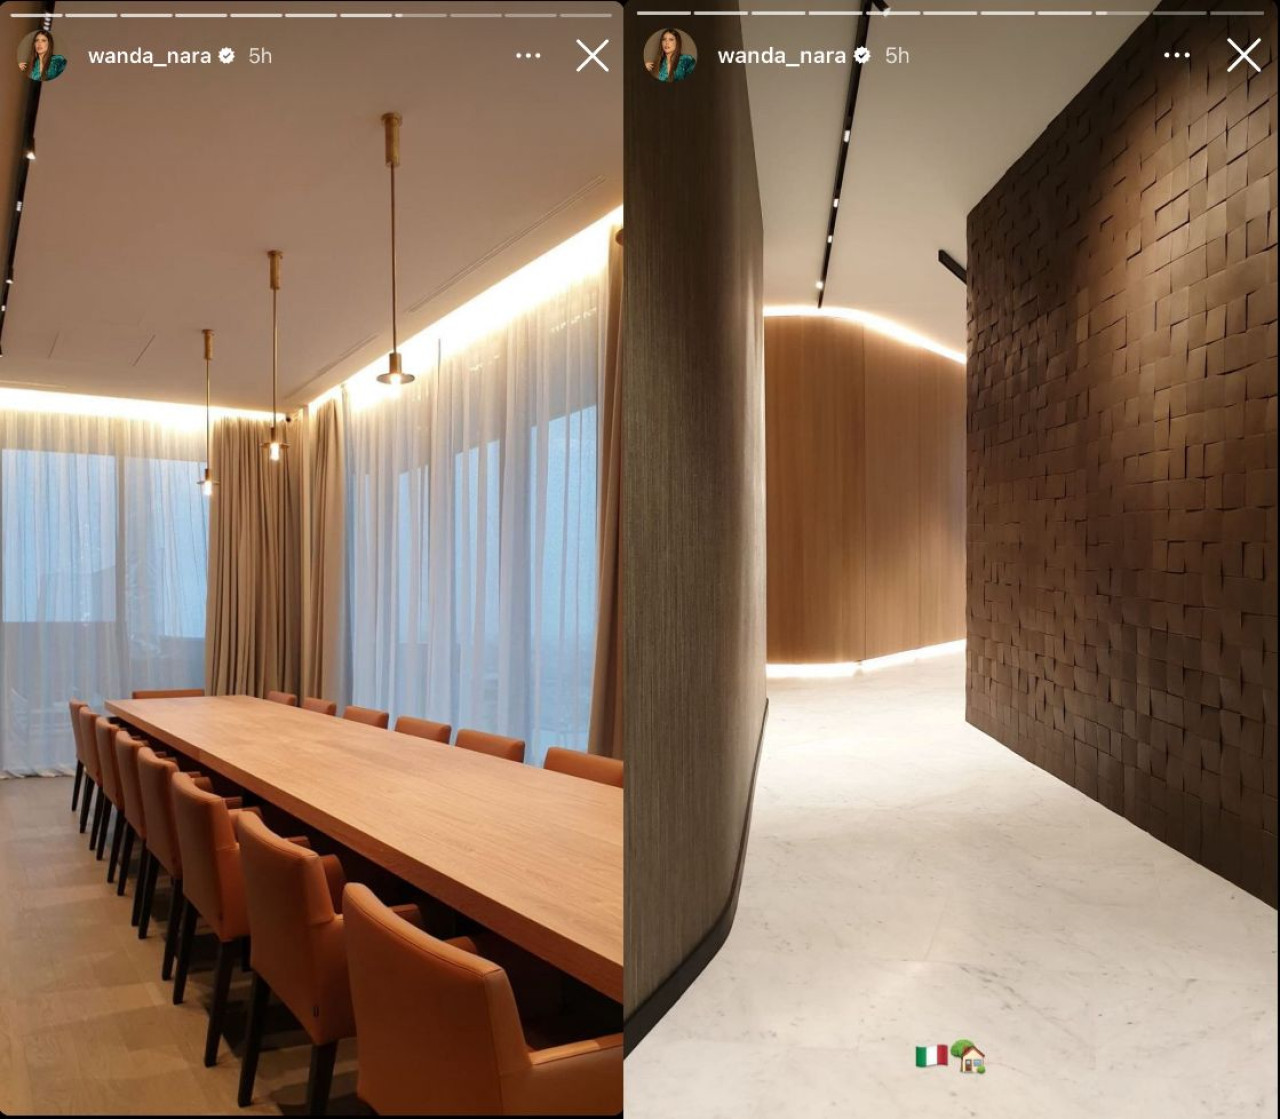 El lujoso departamento de Wanda Nara en Milán. Foto: Instagram